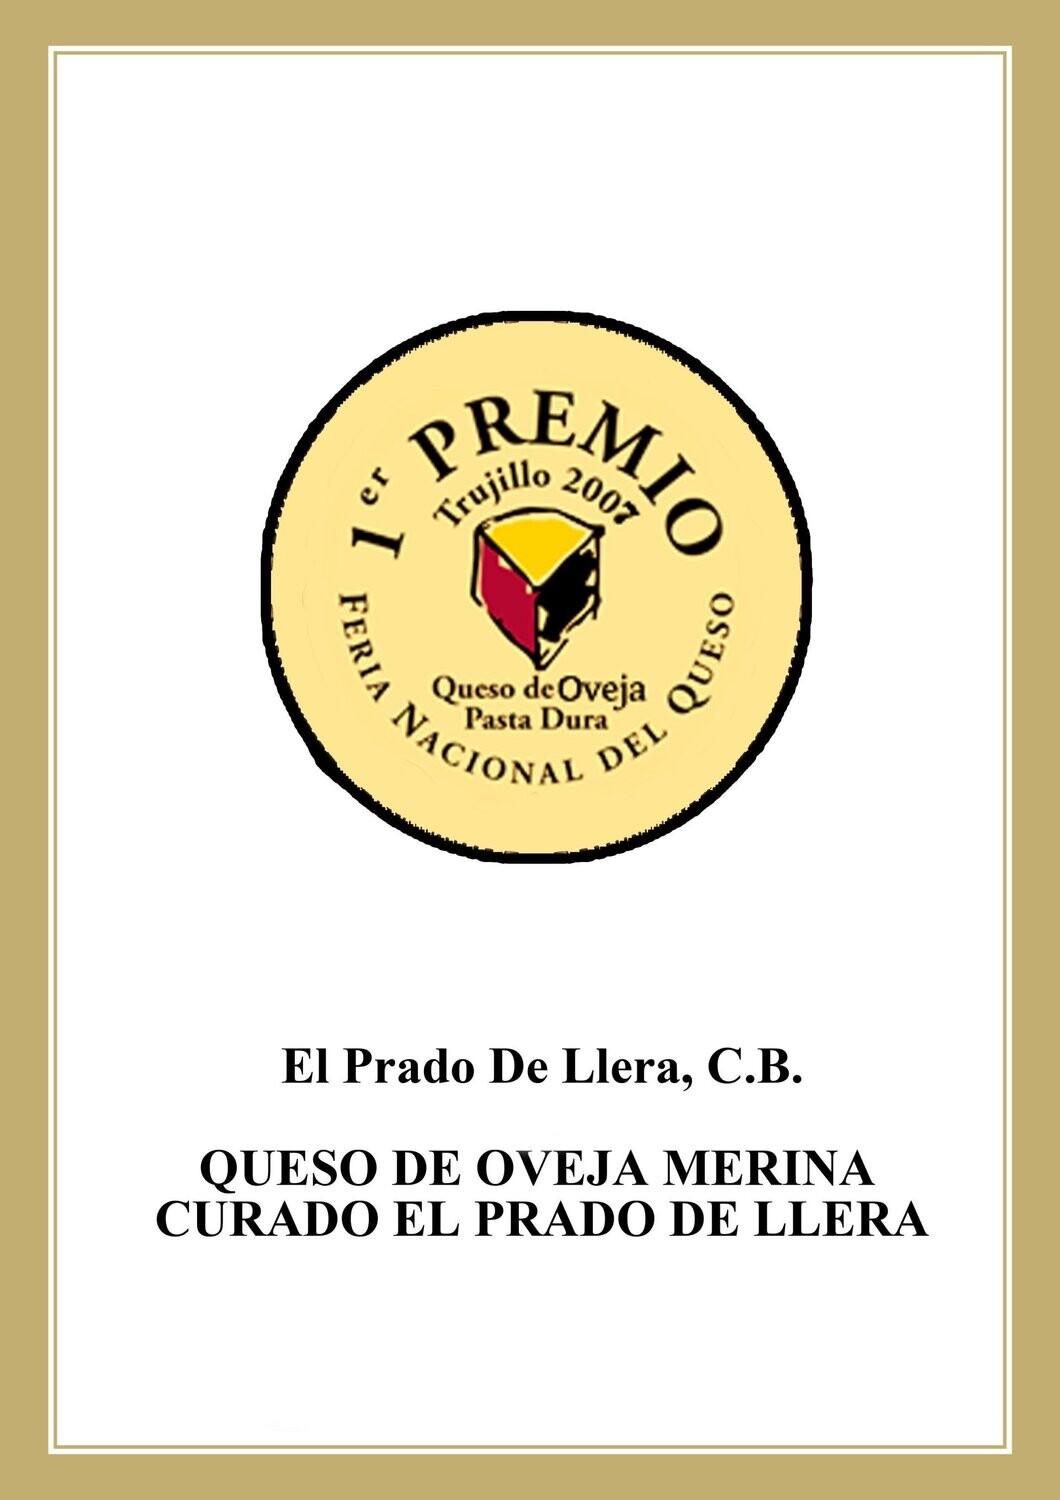 Queso de oveja extremeño premiado - El Prado de Llera - Al Corte Extremadura